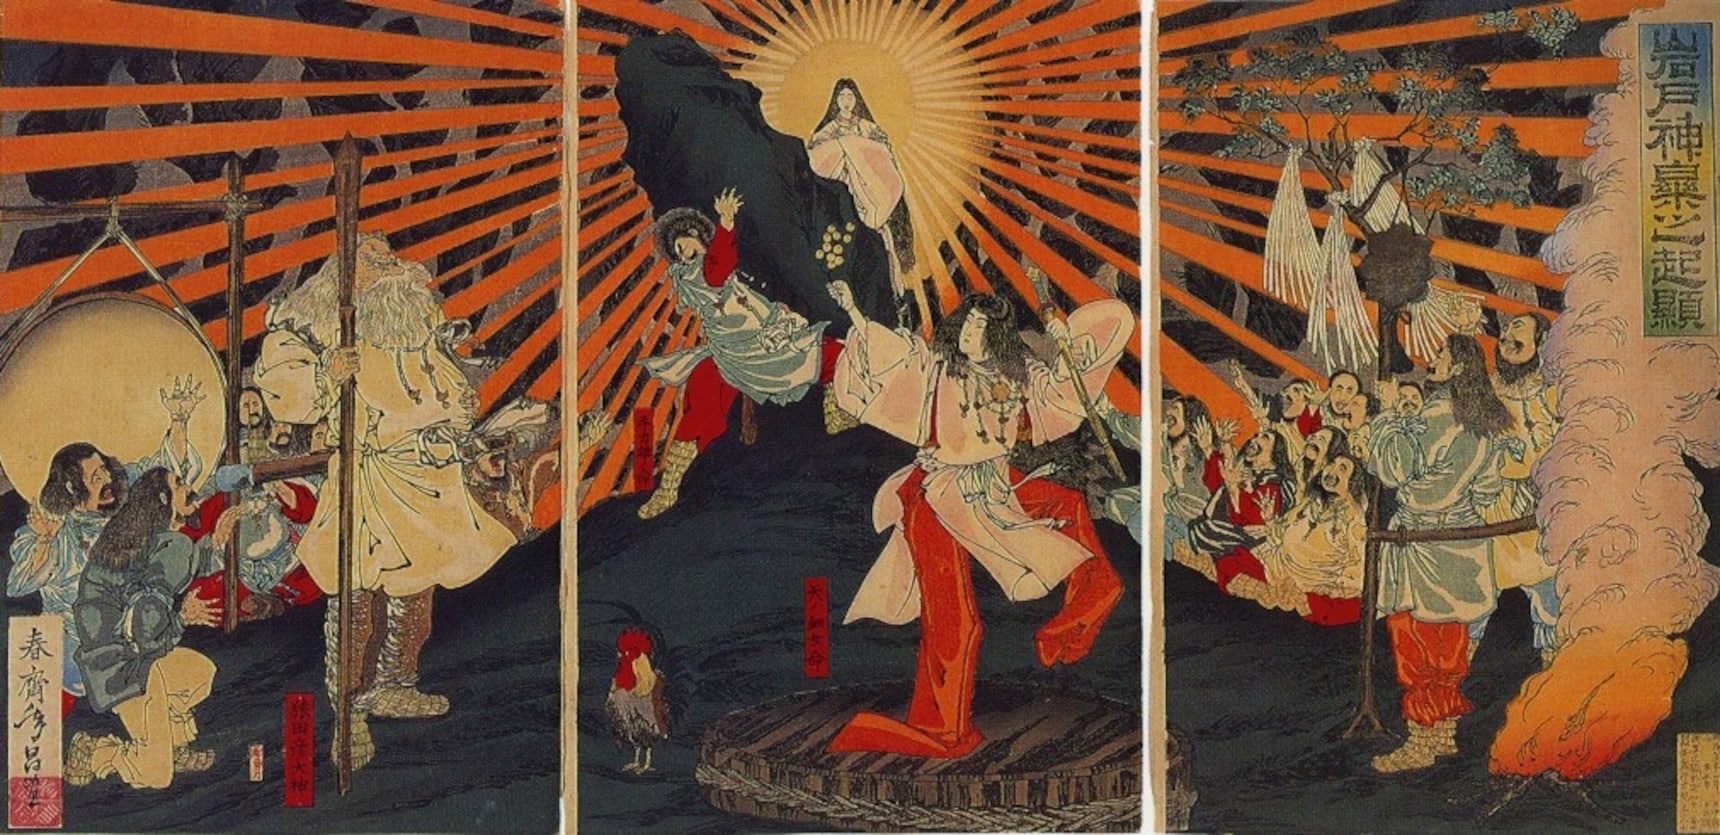 10 Iconic Japanese Gods